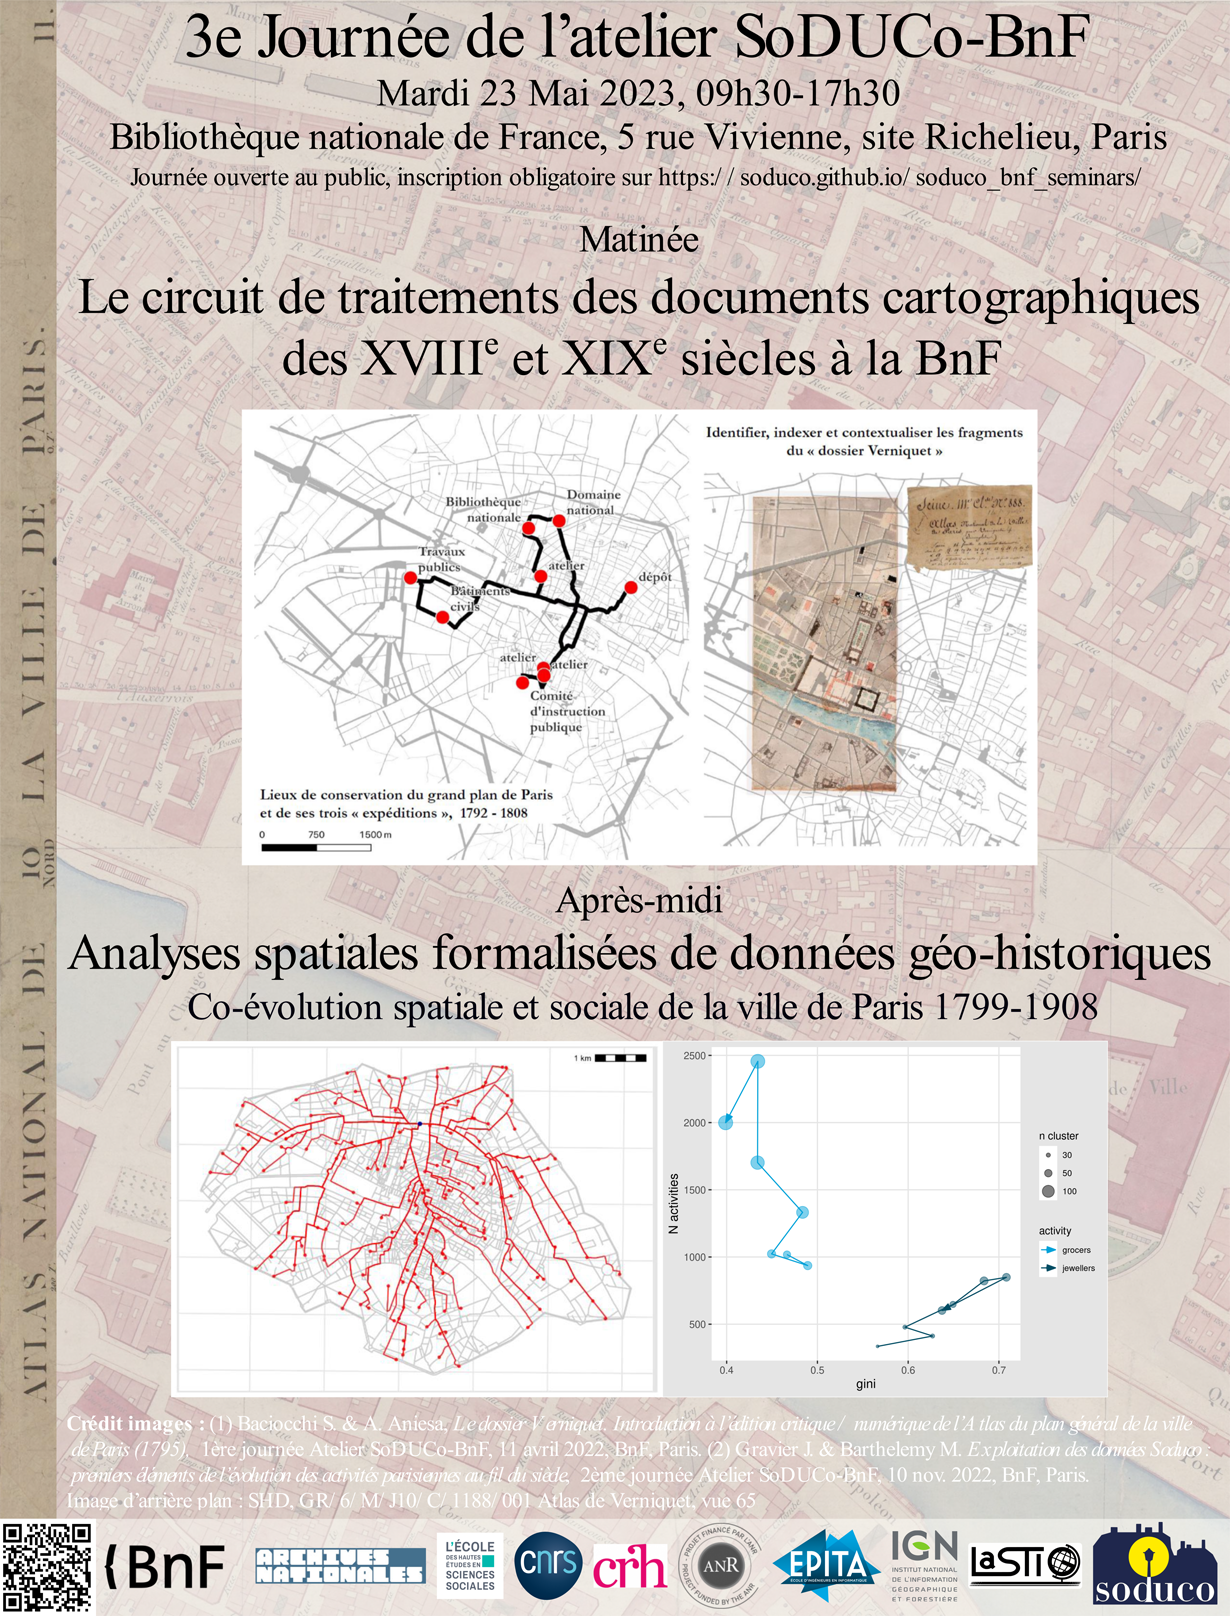 Le circuit des traitements des documents cartographiques des XVIIIe et XIXe siècle à la BnF